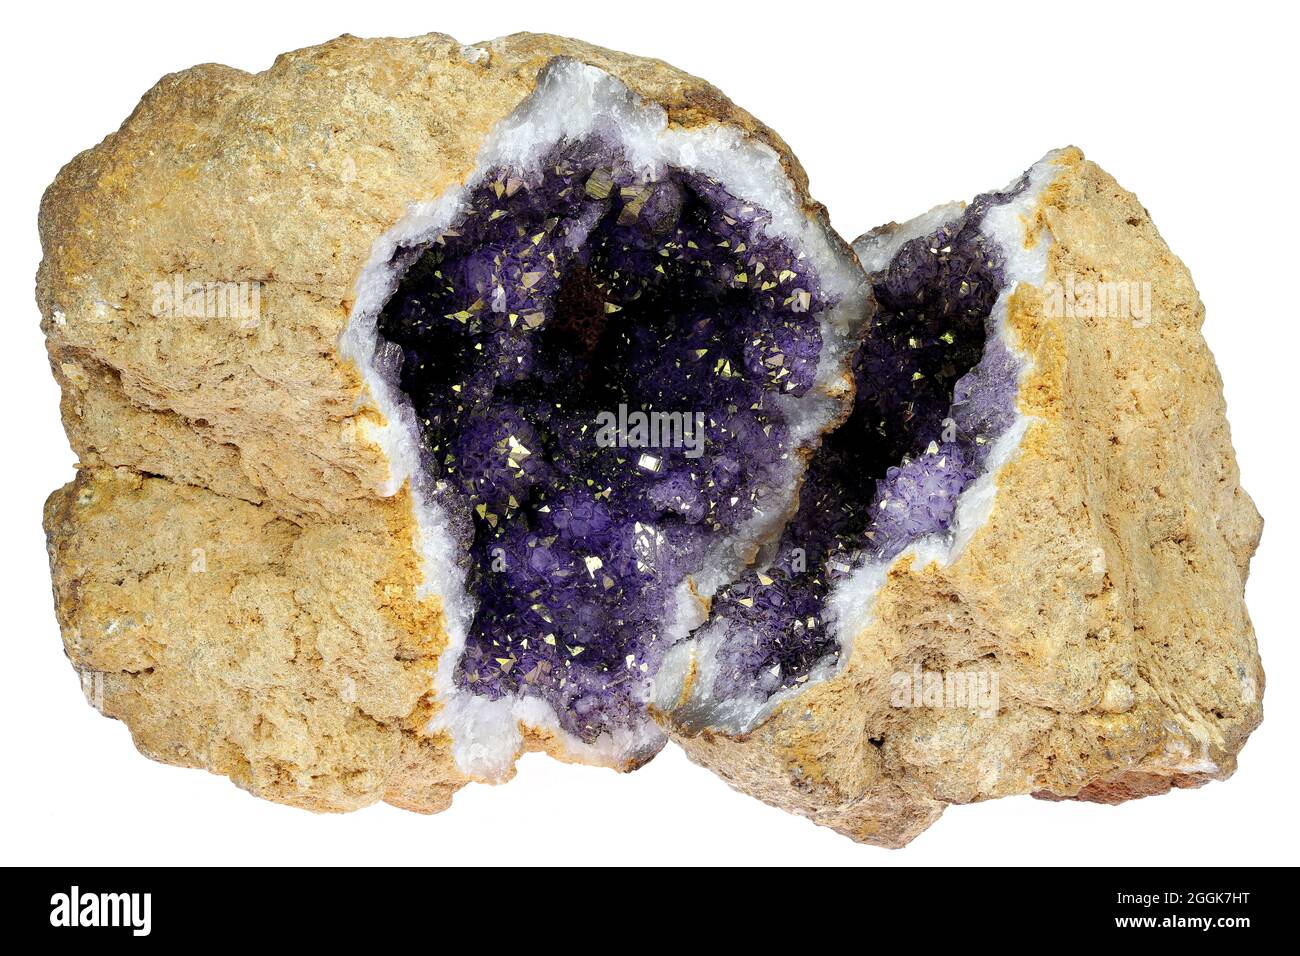 Geode ametista immagini e fotografie stock ad alta risoluzione - Alamy